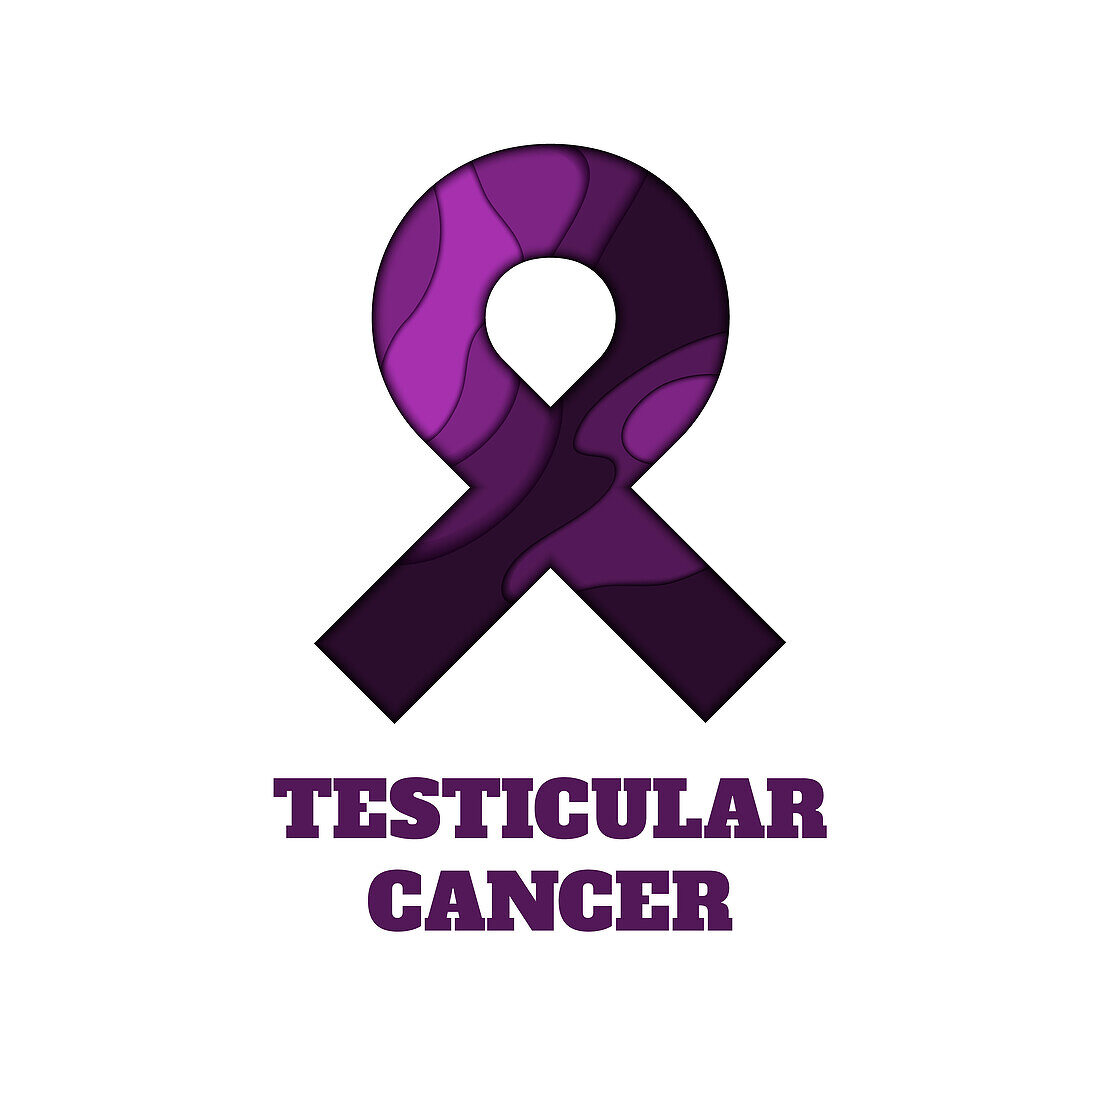 Testicular cancer awareness, conceptual illustration